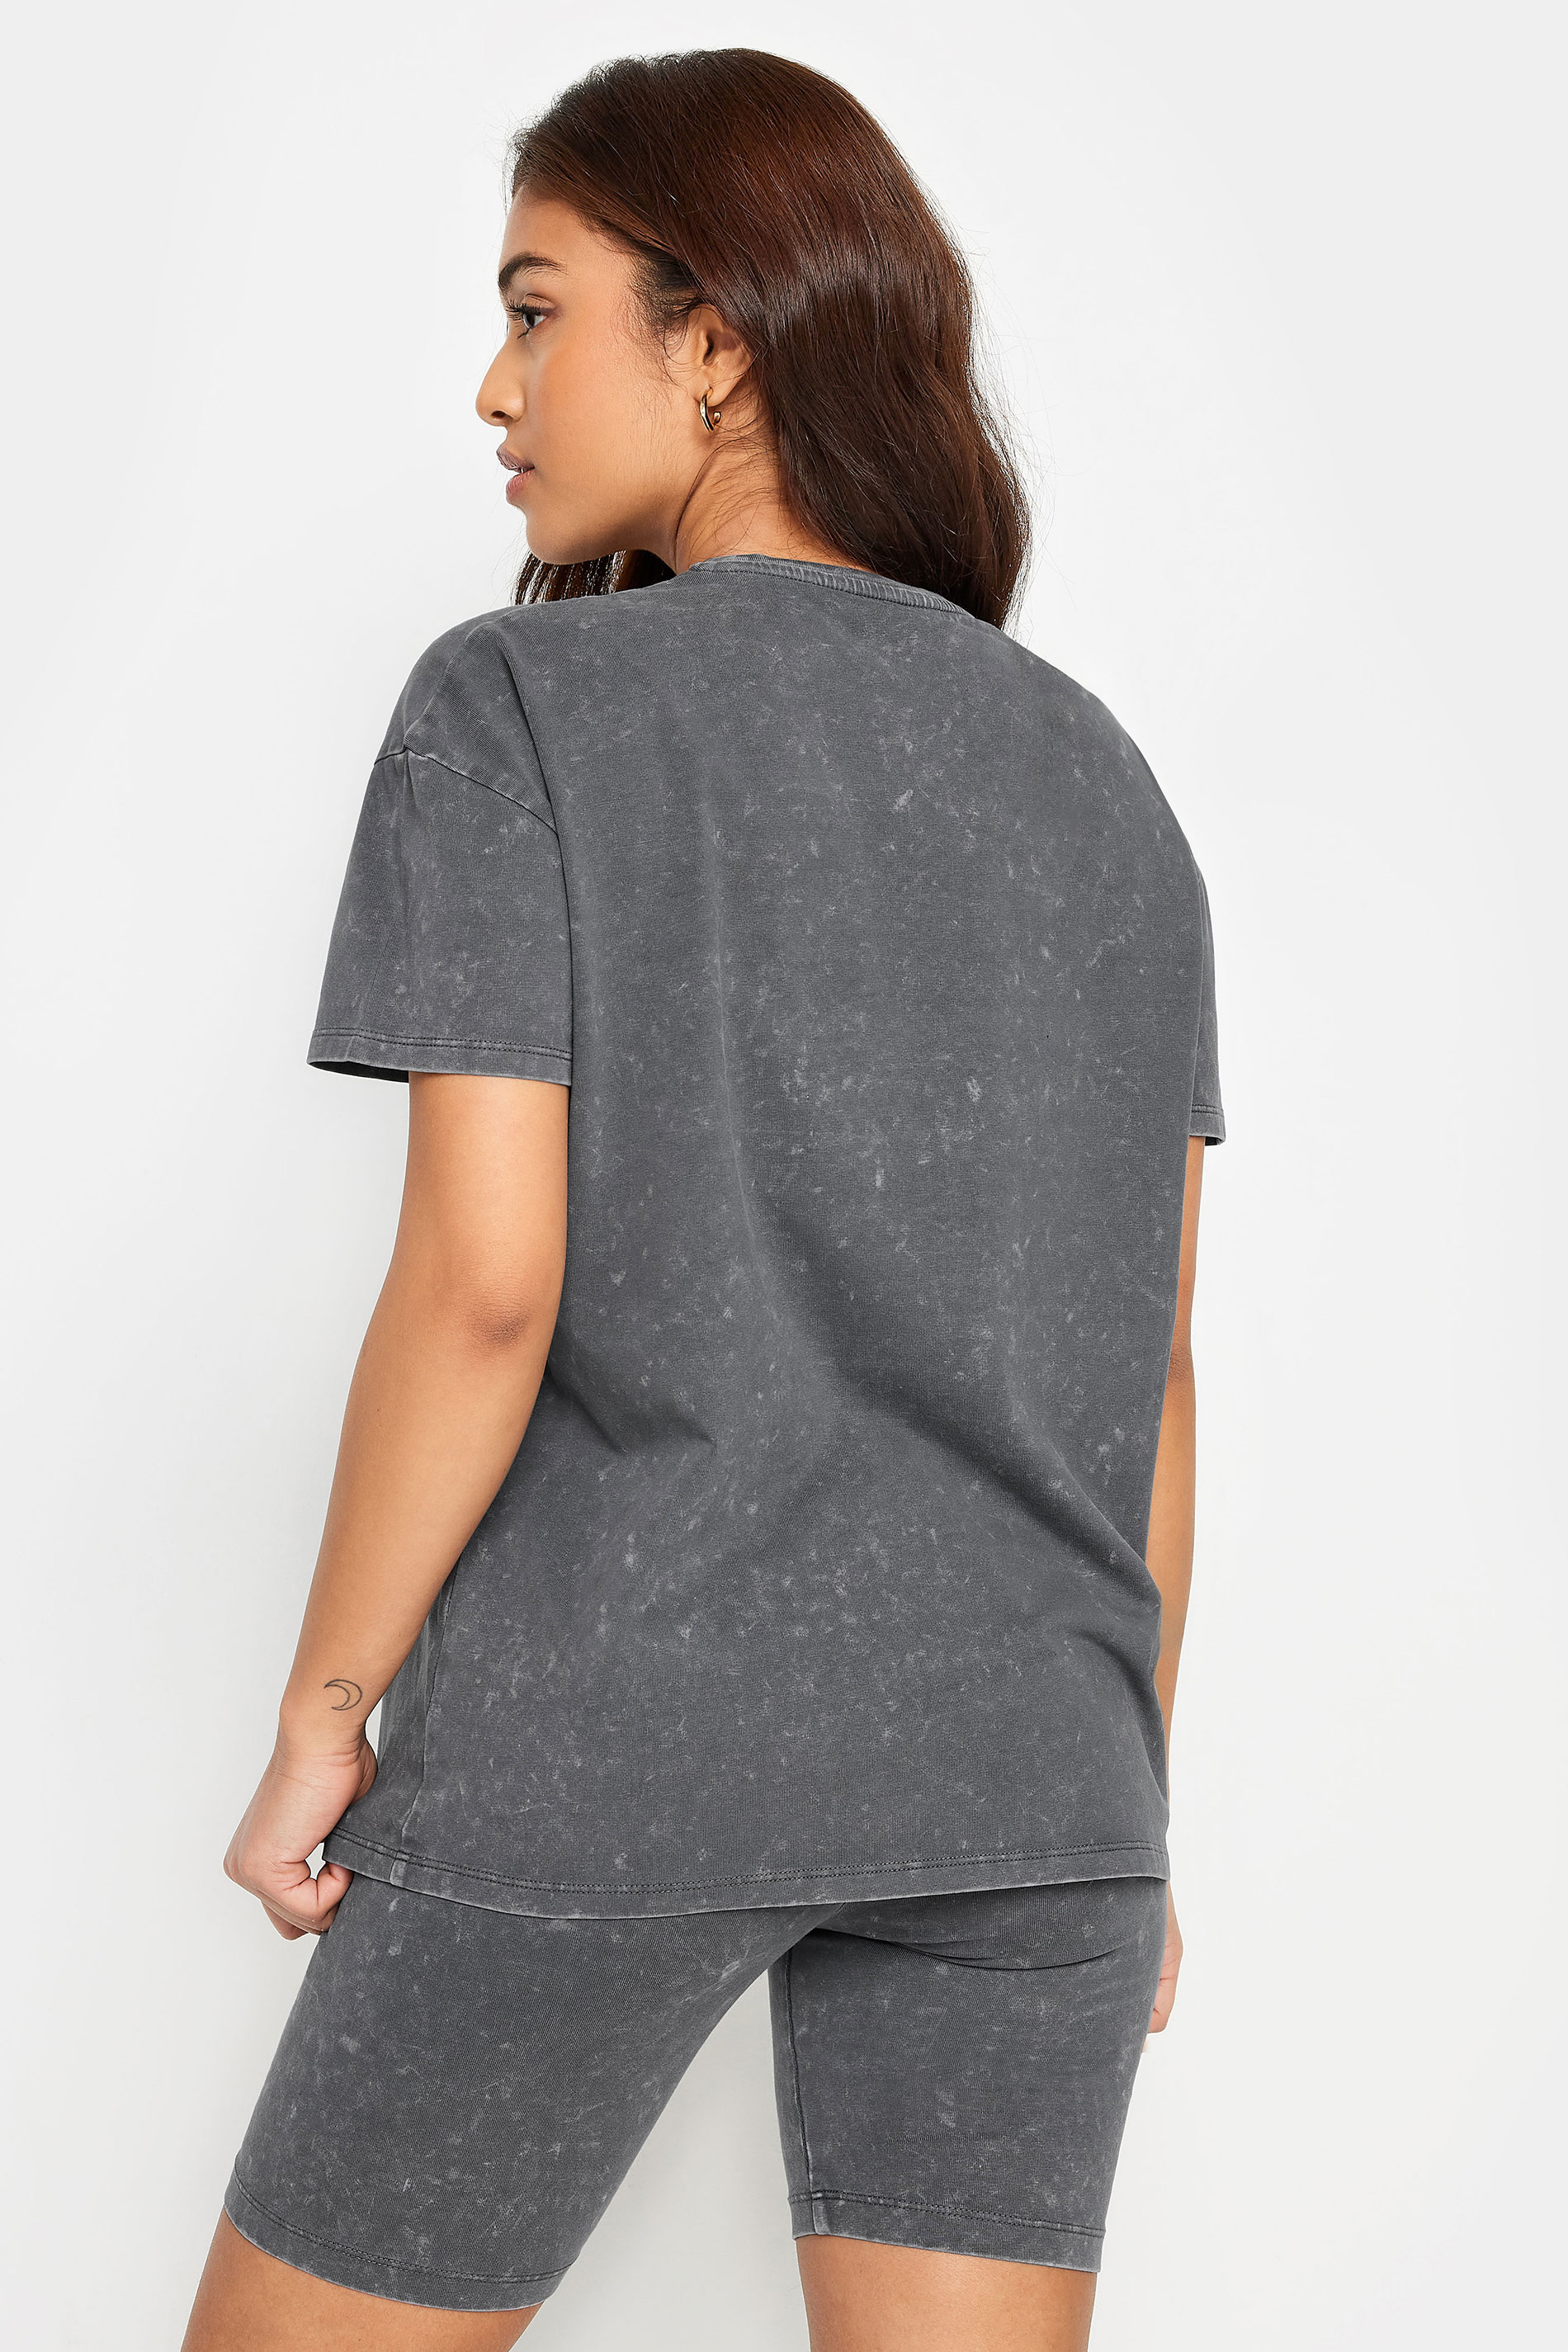 PixieGirl Petite Women's Grey Acid Wash T-Shirt & Shorts Set | PixieGirl 3